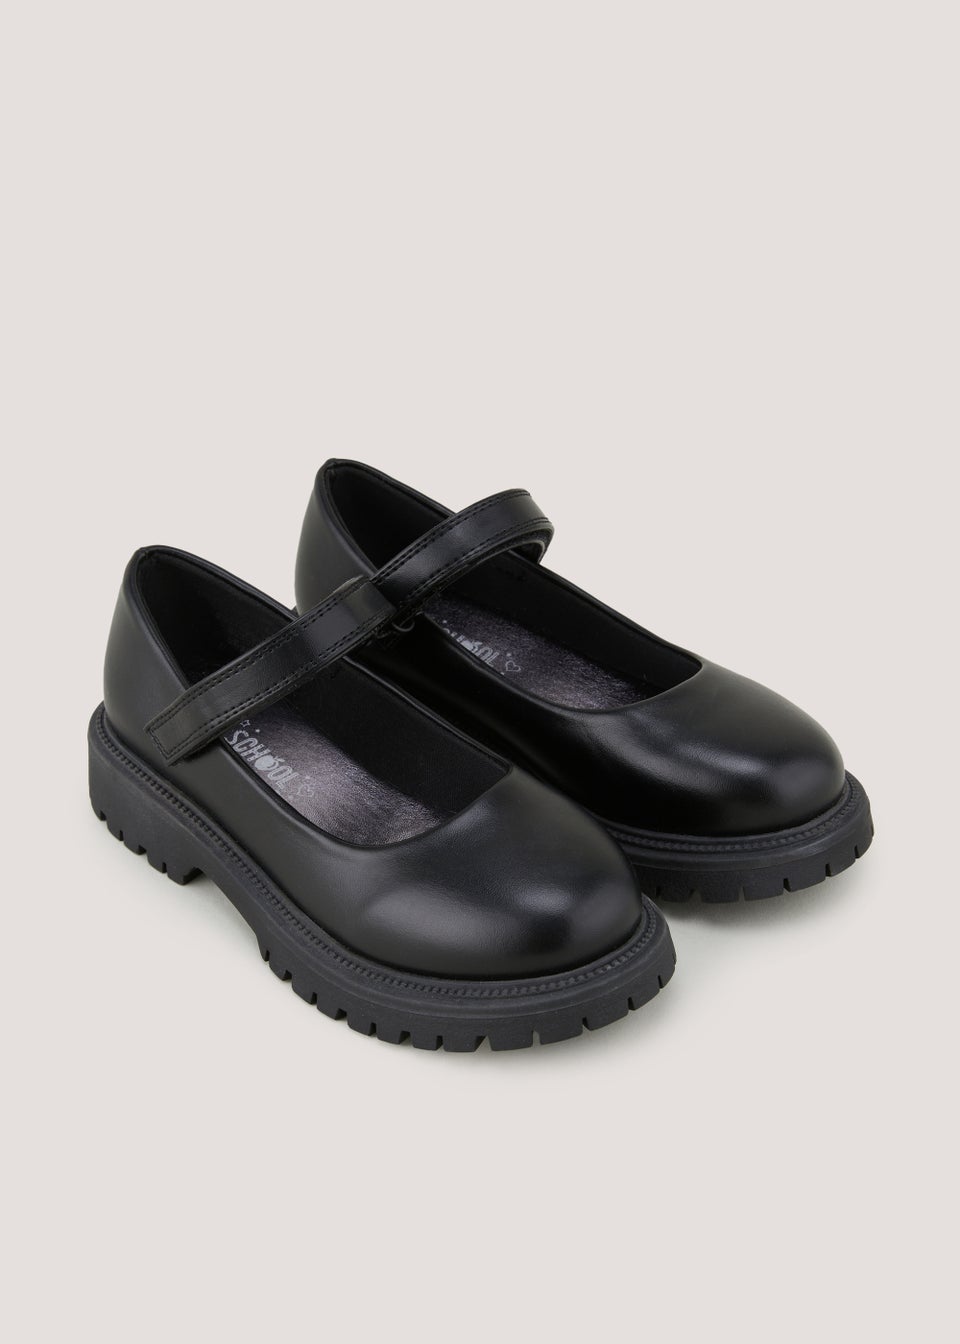 Черные школьные туфли для девочек (от 10 до 5 лет), белый черные лакированные массивные школьные туфли для девочек до 10 лет – от 5 лет